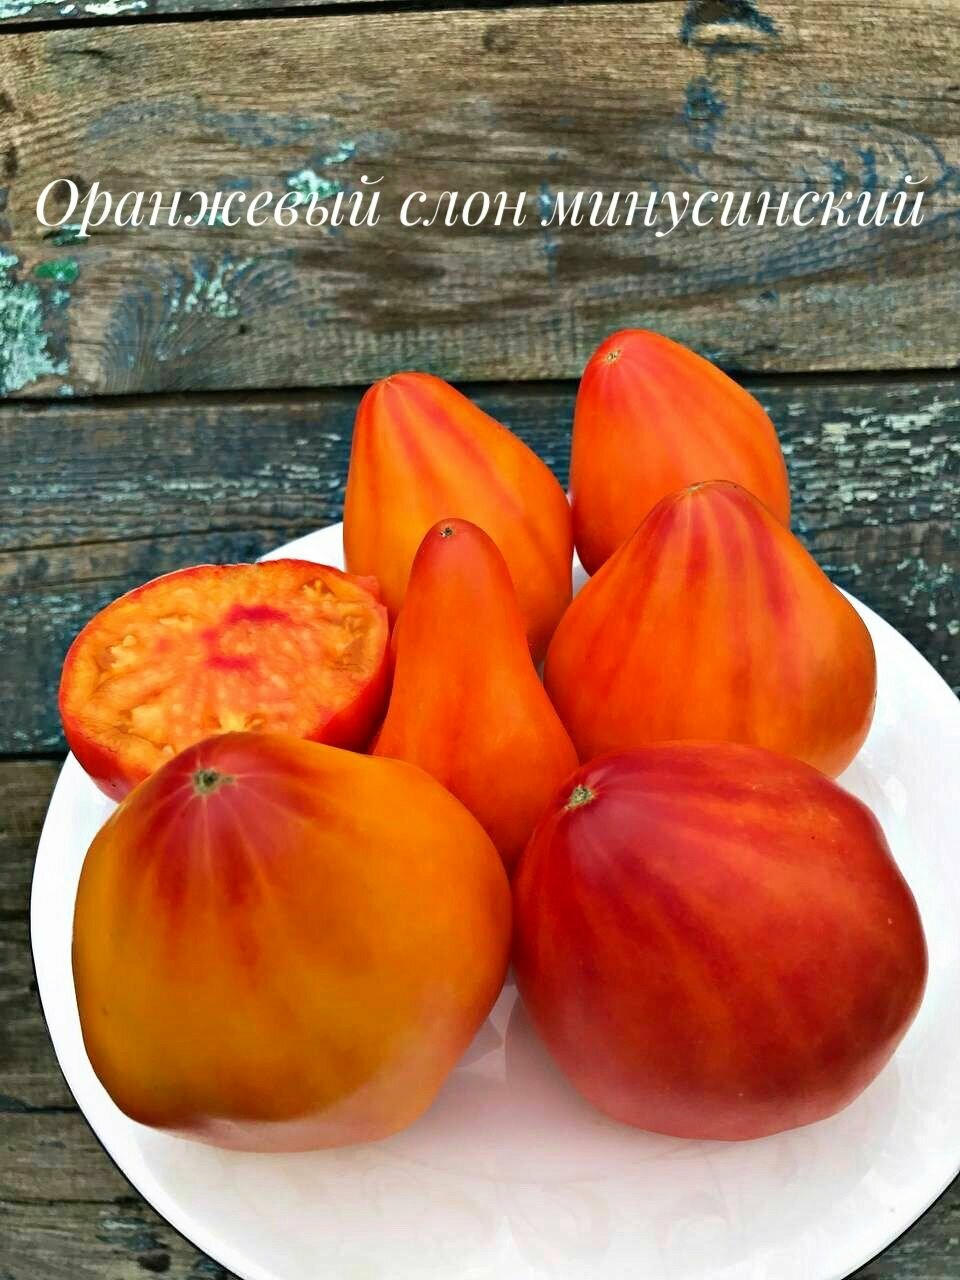 Коллекционные семена томата Оранжевый слон Минусинский